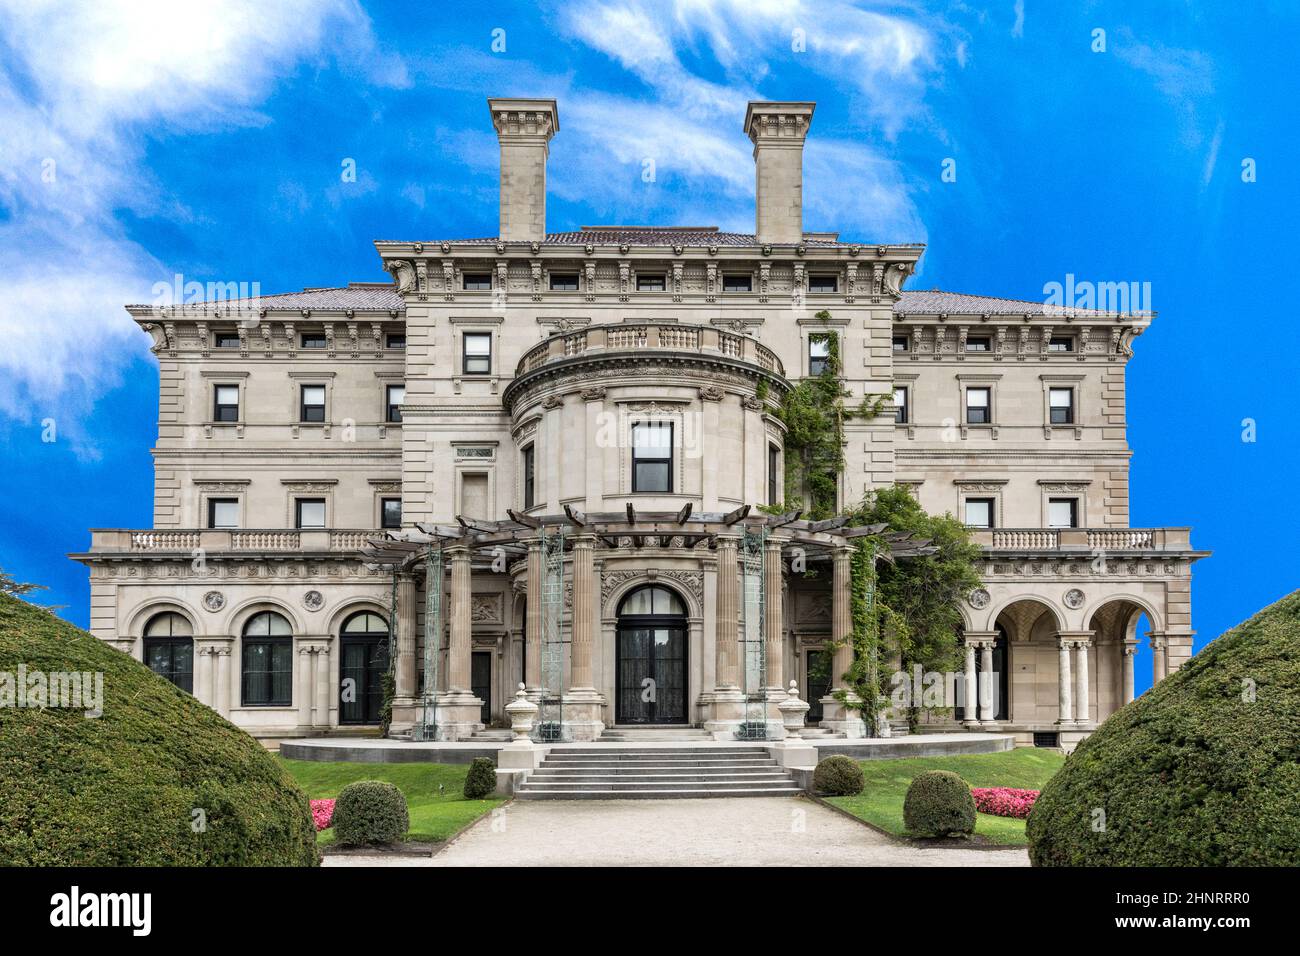 Das Breakers ist ein altes Newport Mansion, das für die Öffentlichkeit zugänglich ist Stockfoto